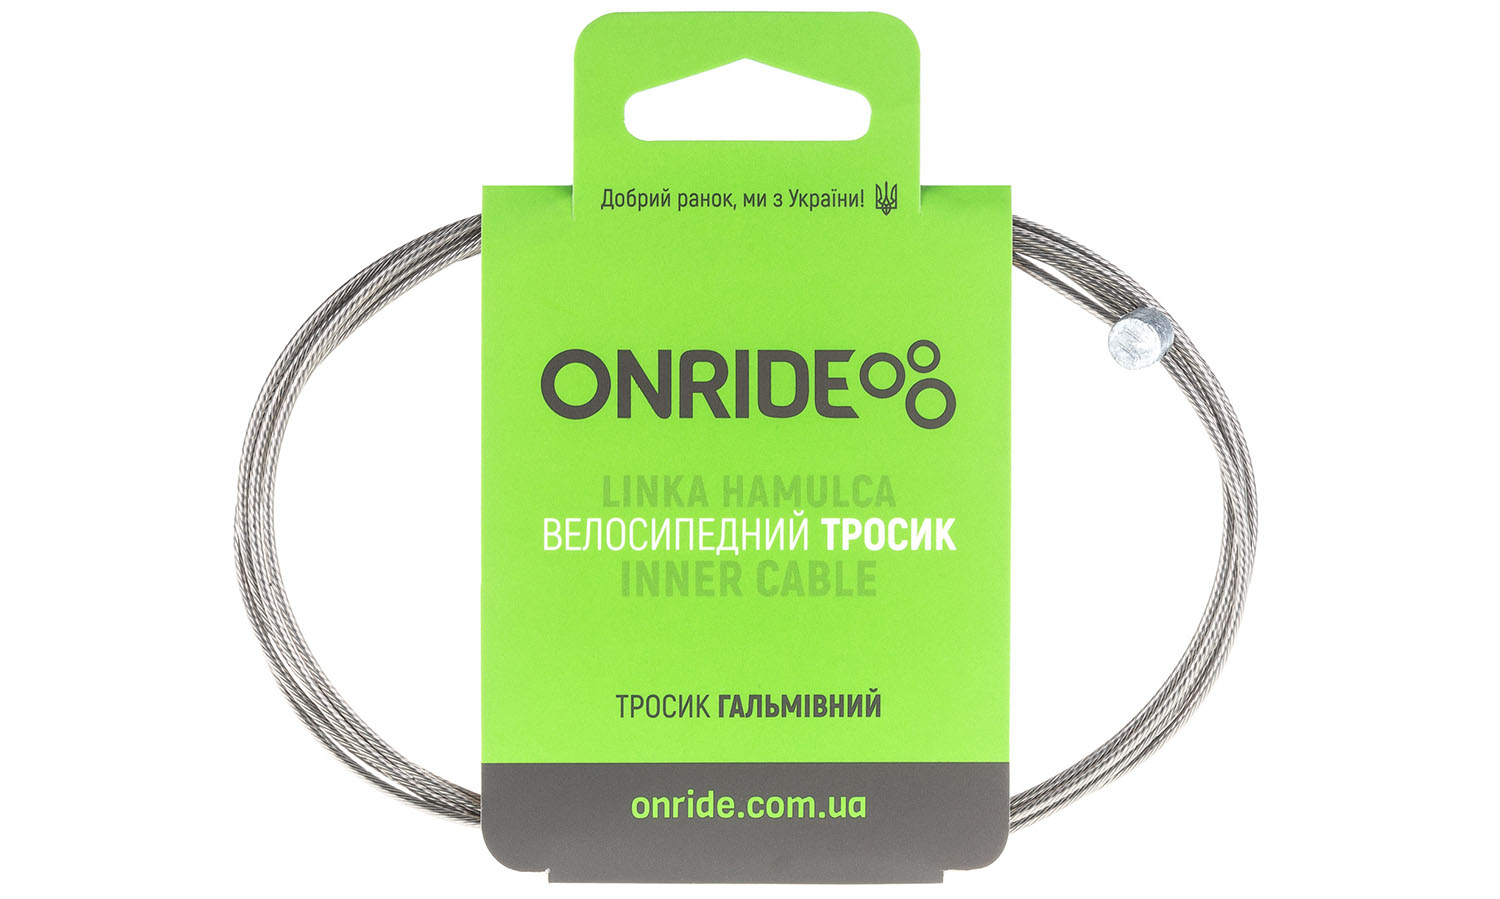 Фотографія Тросик гальмівний ONRIDE MTB, нержавіюча сталь, полірований, 1,7 м, індивідуальна упаковка блістер